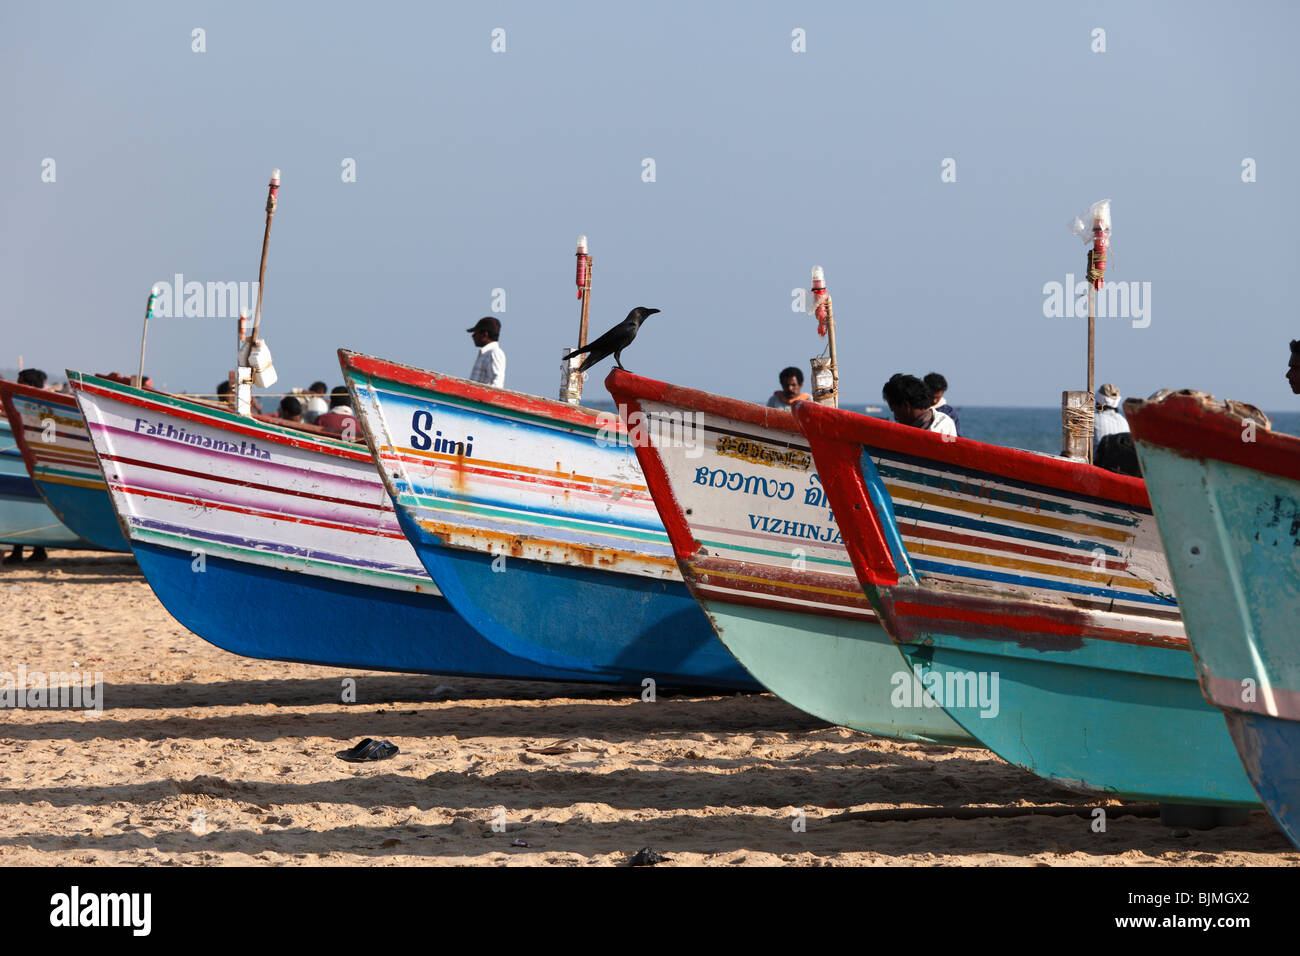 Coloratissime barche di pescatori sulla spiaggia, Somatheram Beach, Malabarian Costa, il Malabar, Kerala, India, Asia Foto Stock